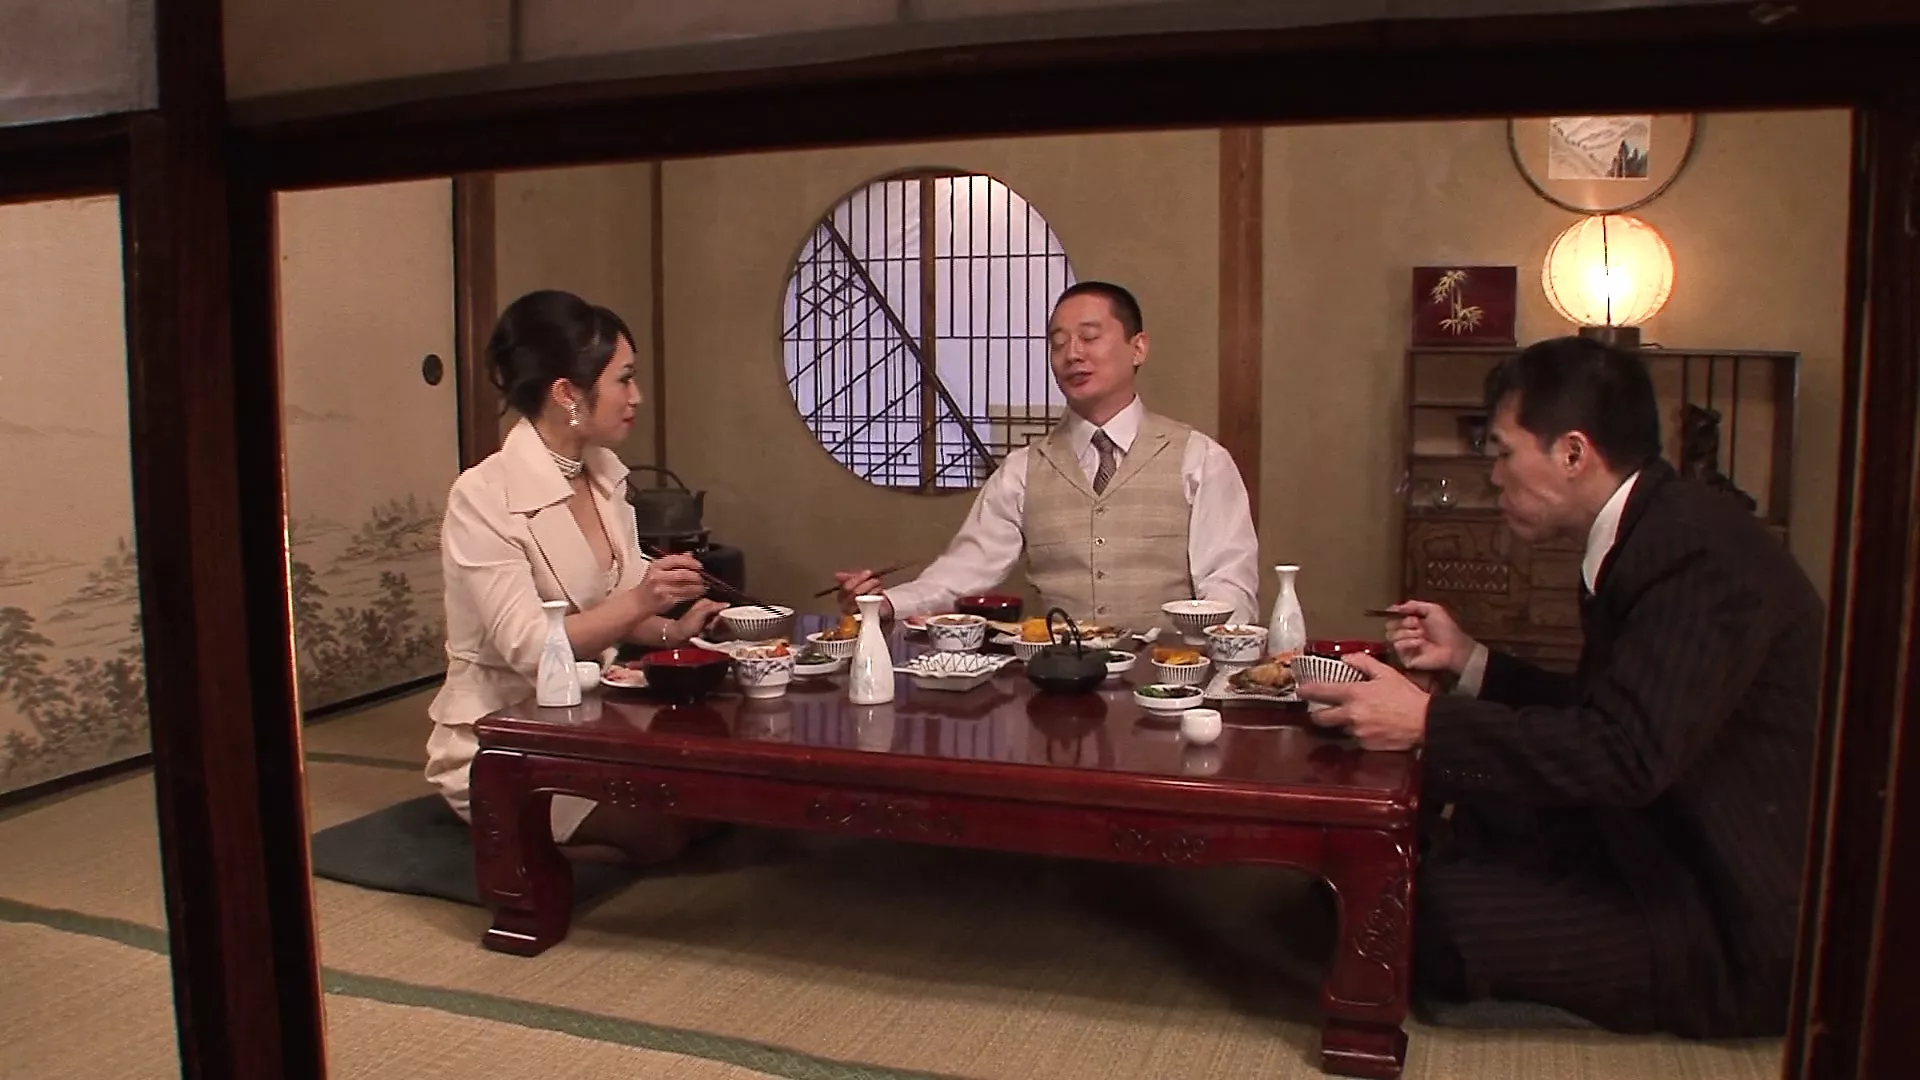 La cena in famiglia si intensificò! I giapponesi dimenticano le loro maniere e sbattono in un trio! xHamster Immagine